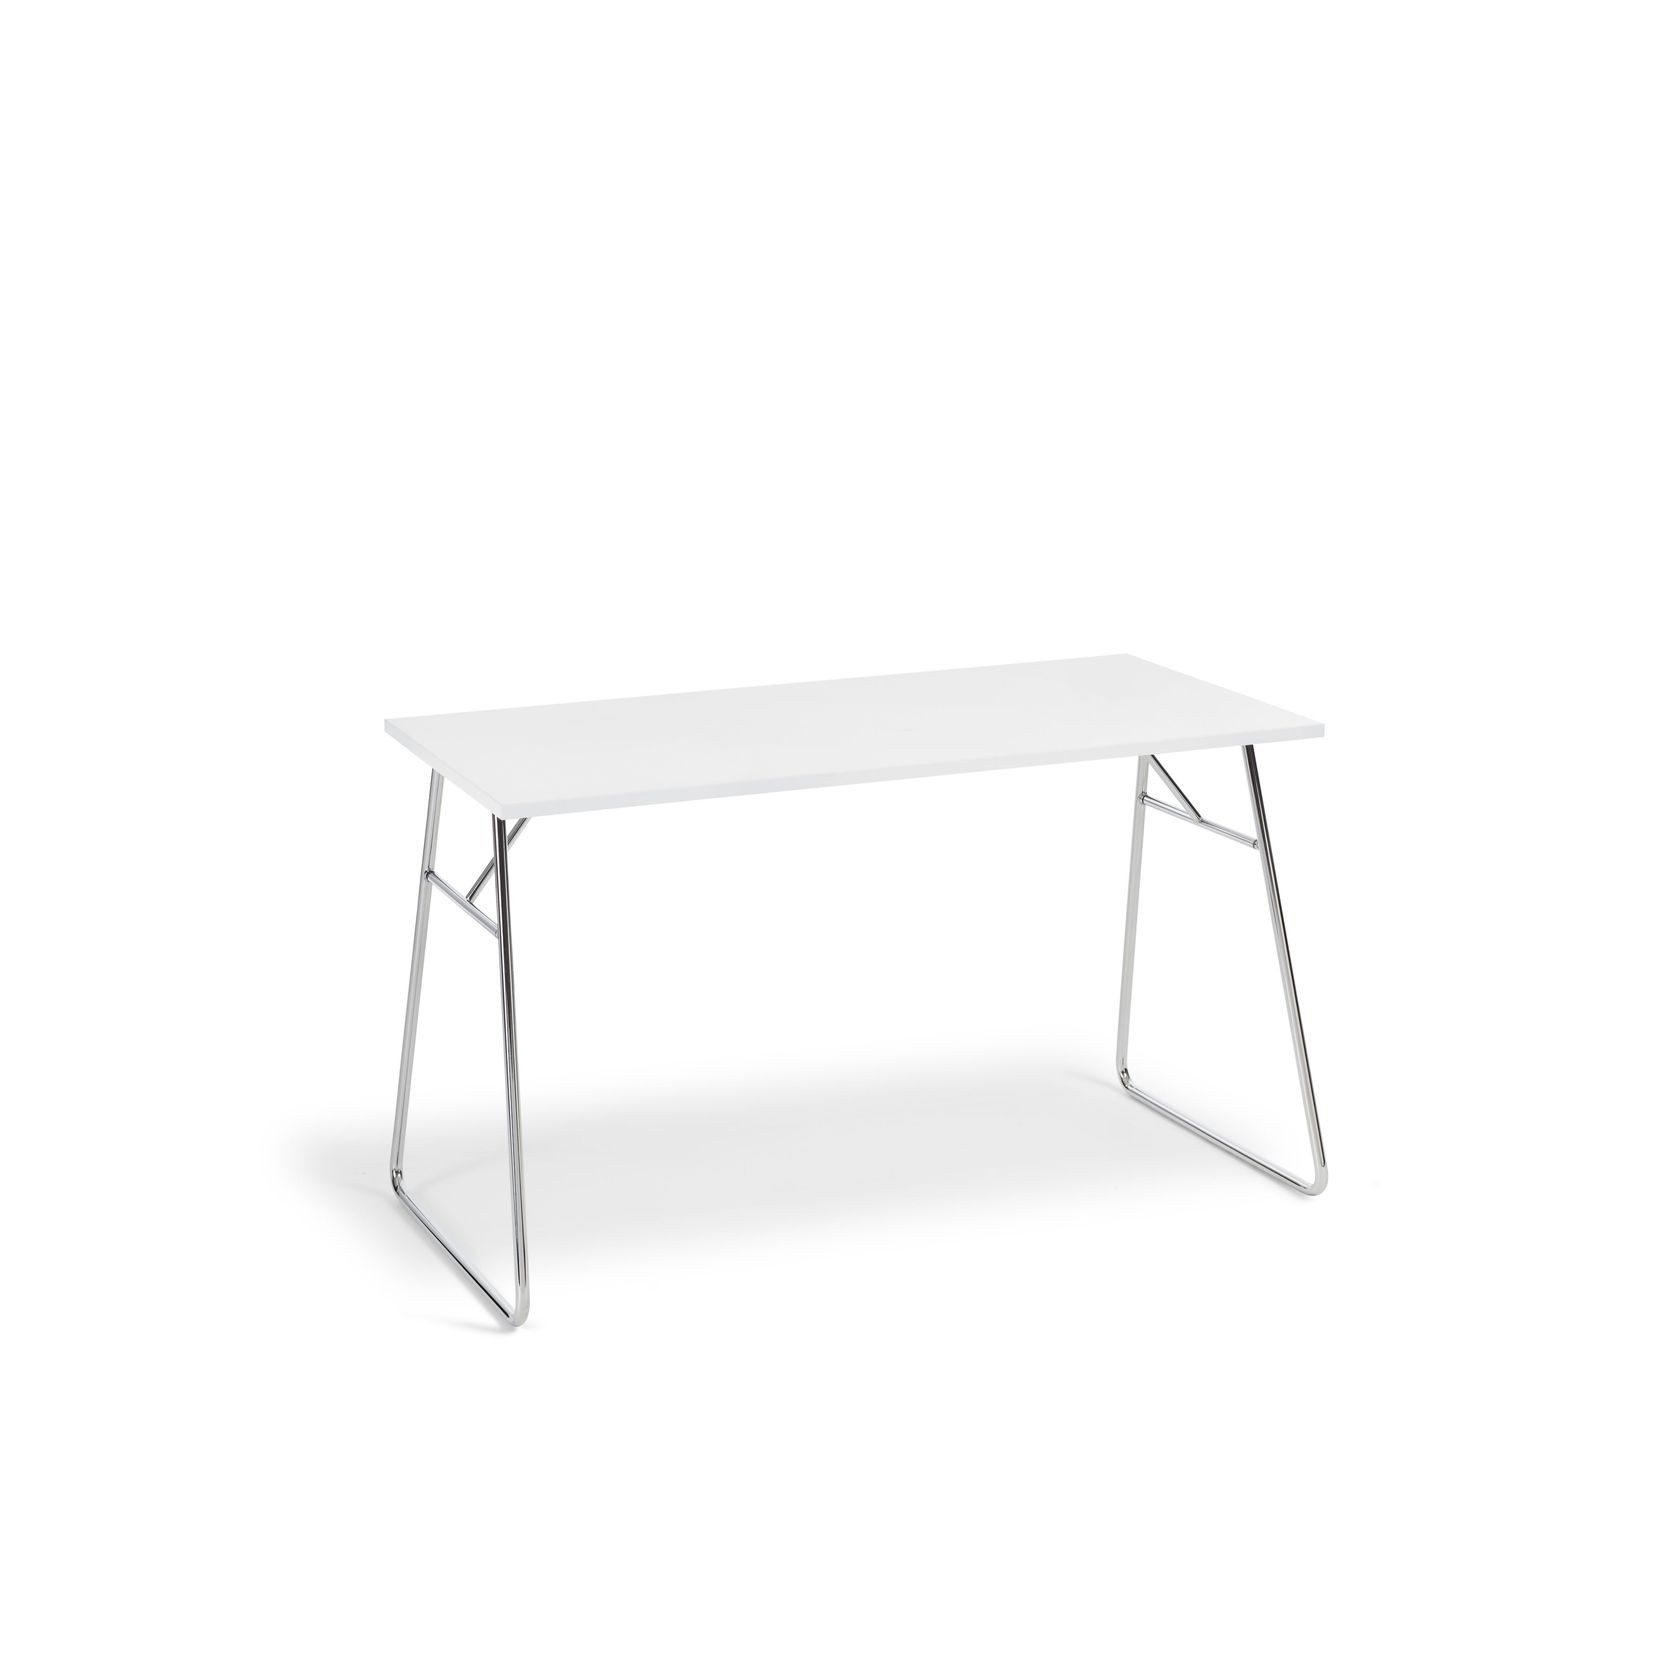 Lite Folding Table by Broberg & Ridderstråle gallery detail image